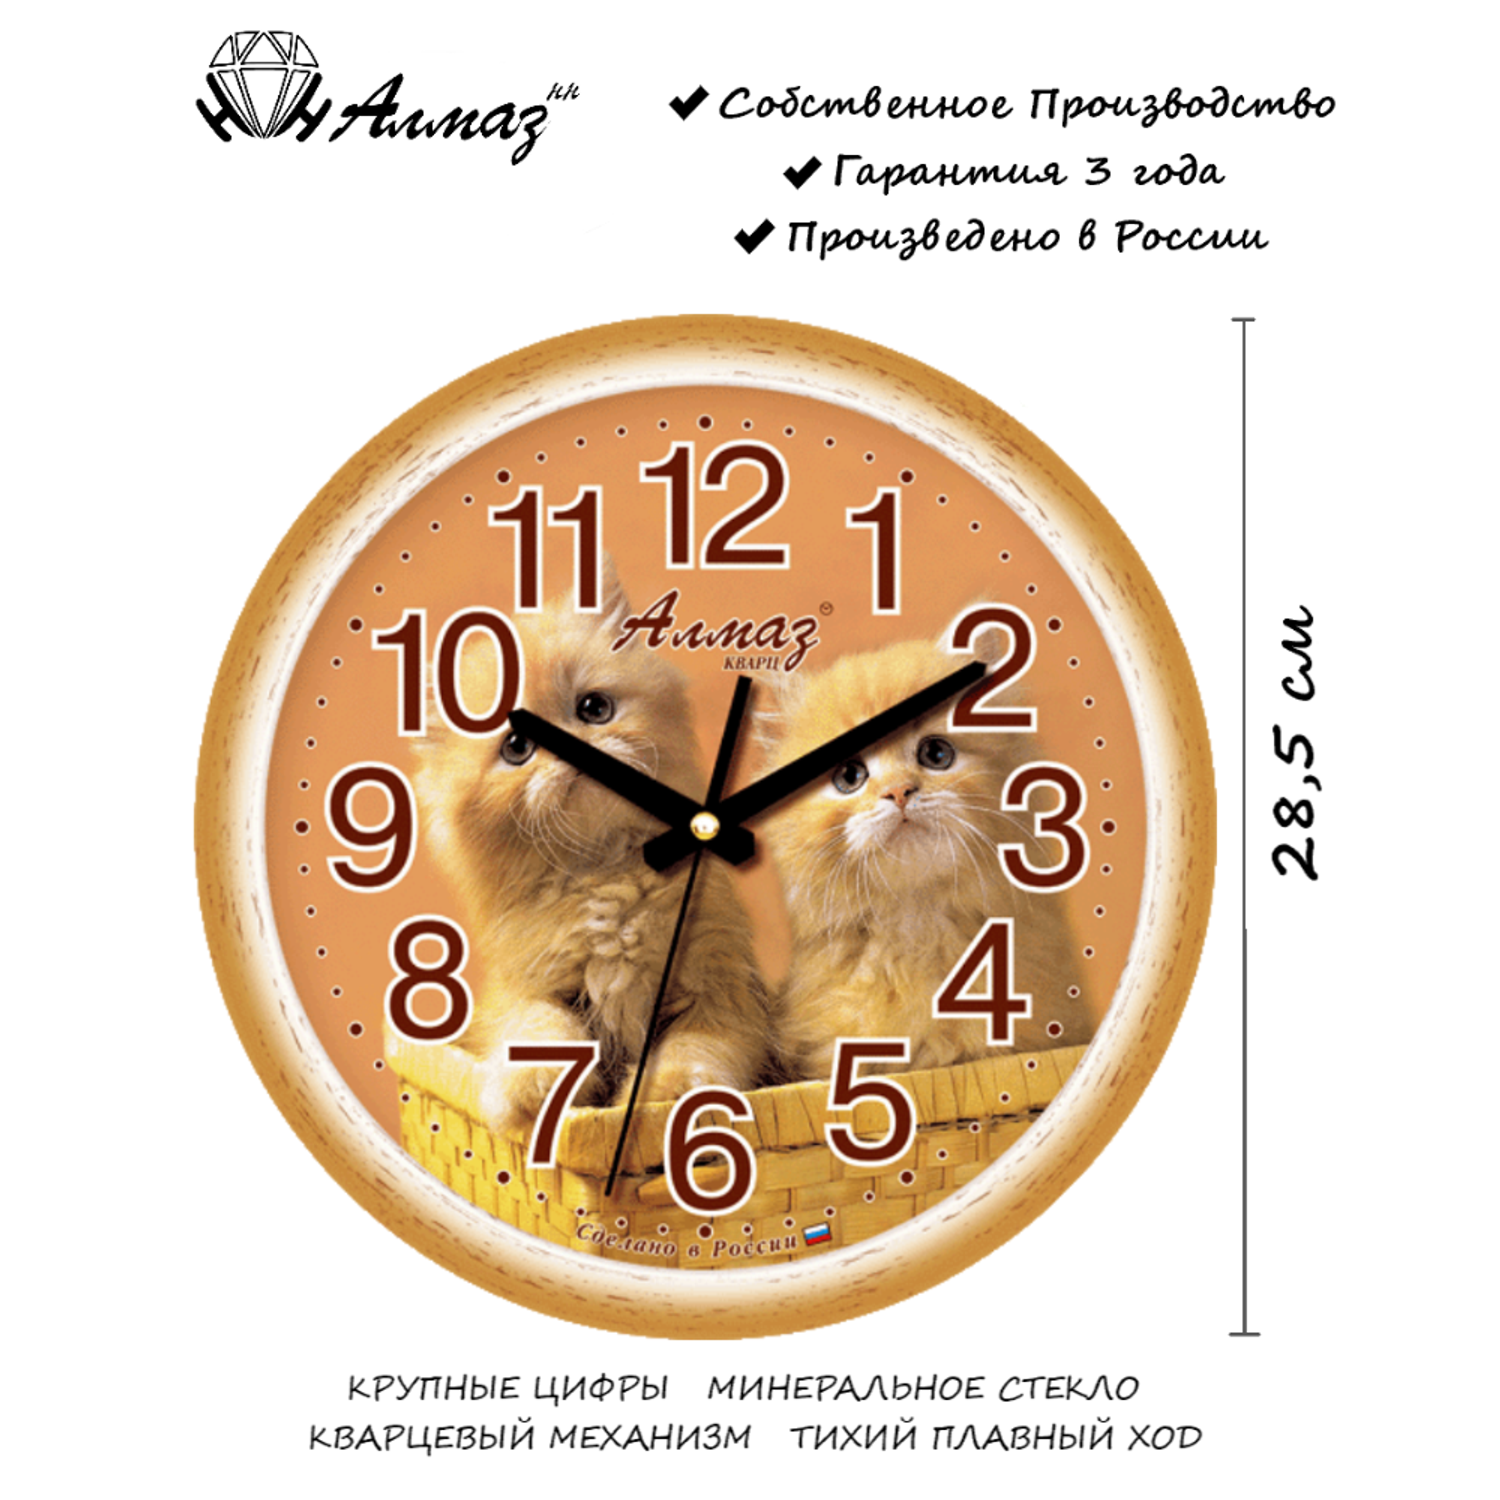 Часы АлмазНН настенные круглые бело-коричневые 28.5 см - фото 2